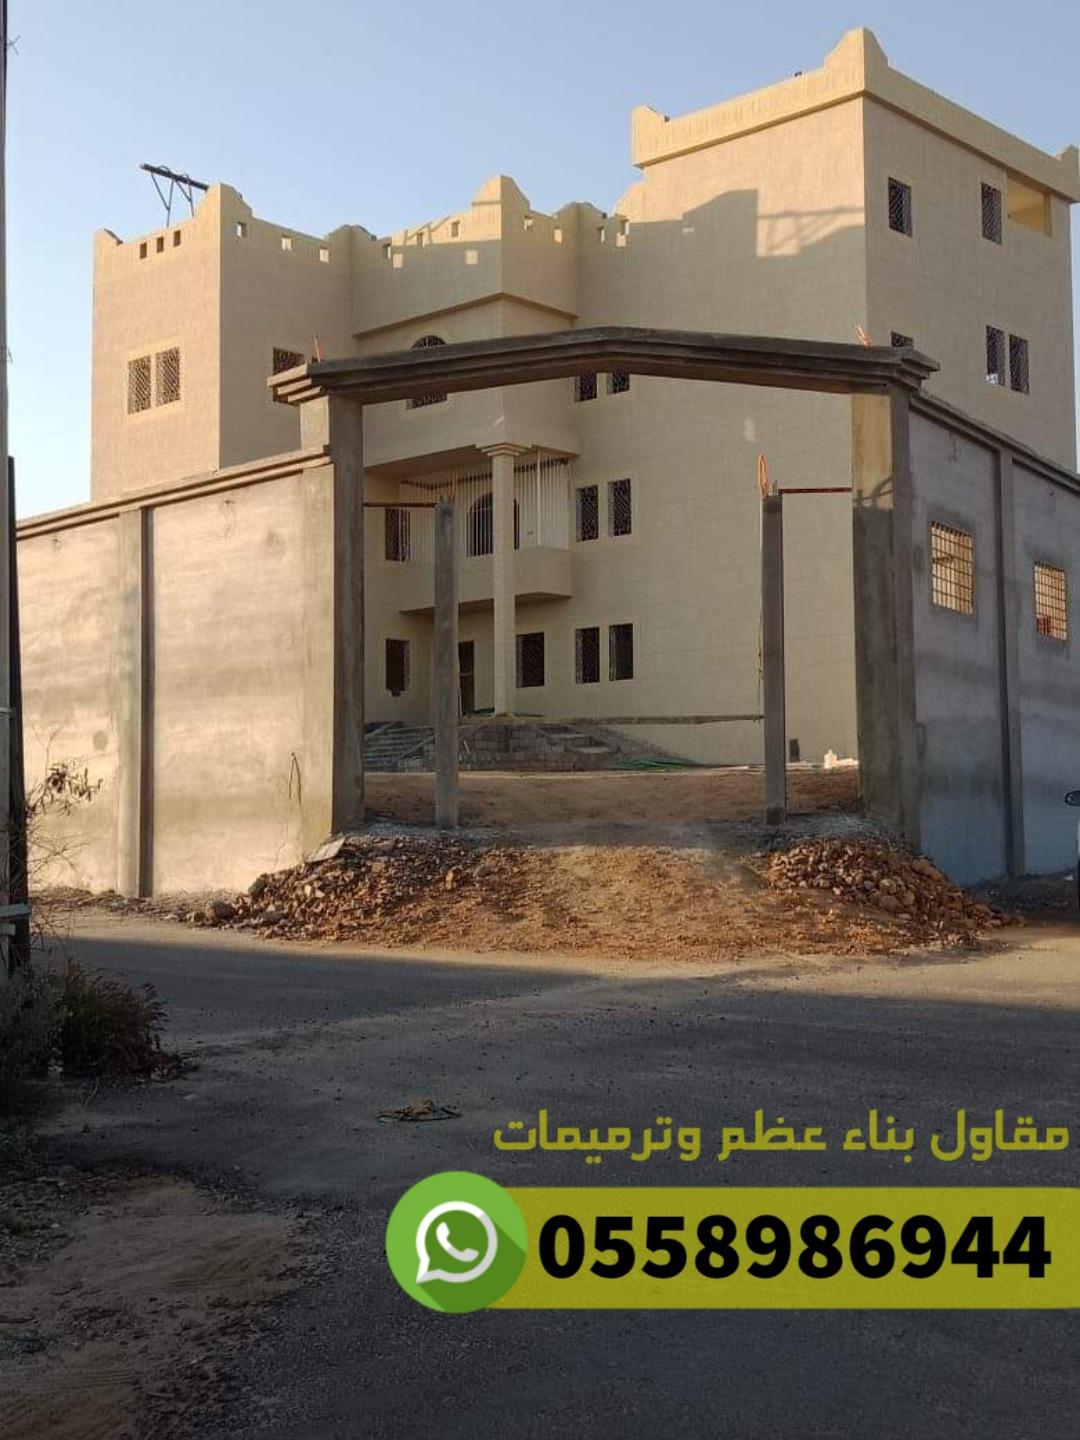 مؤسسة مقاولات مباني منازل عمائر فلل في جدة, 0558986944